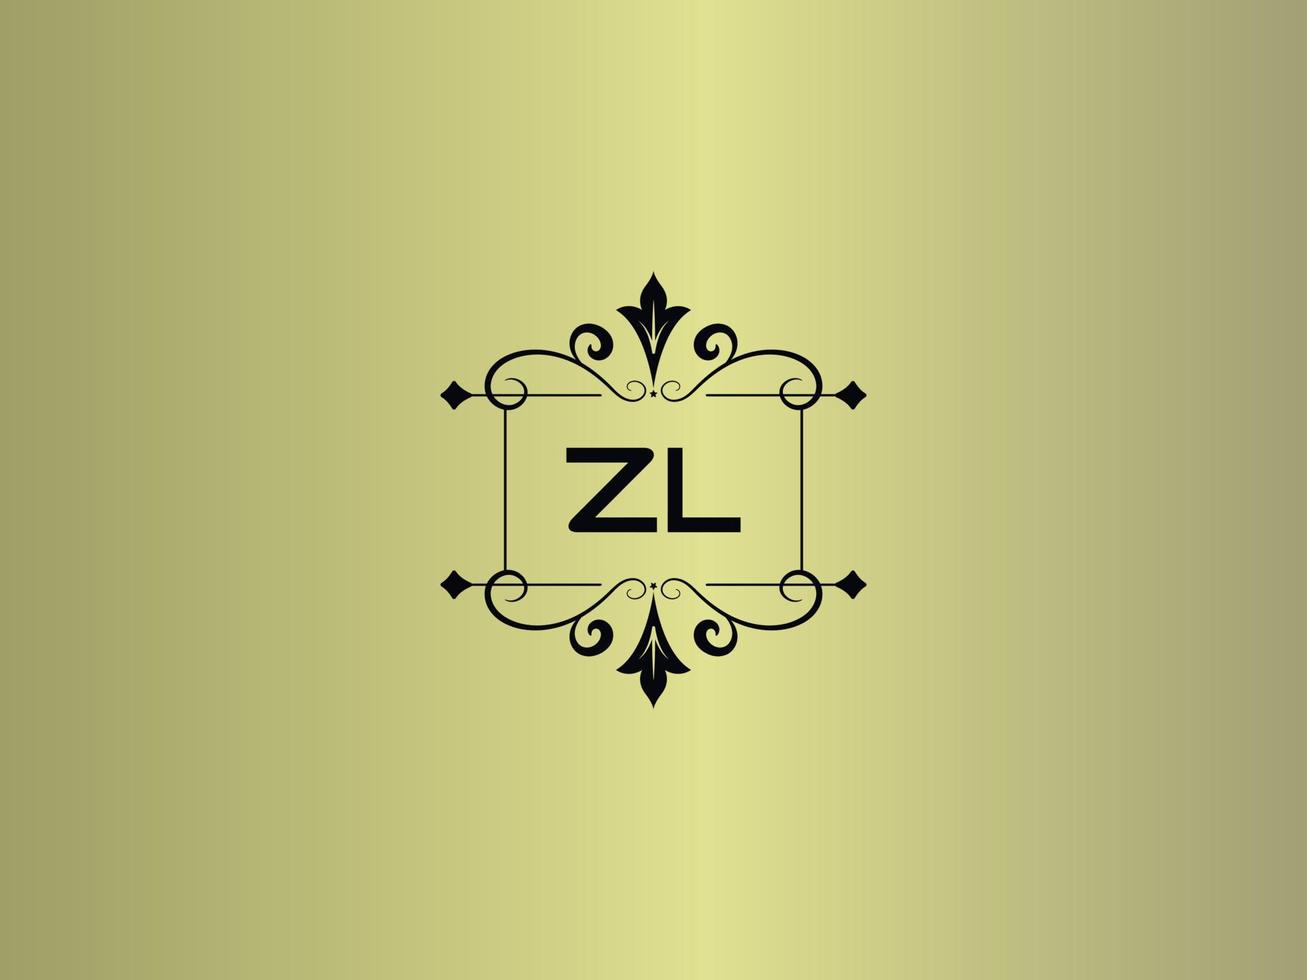 kreatives zl-logobild, erstklassiges zl-luxusbriefdesign vektor